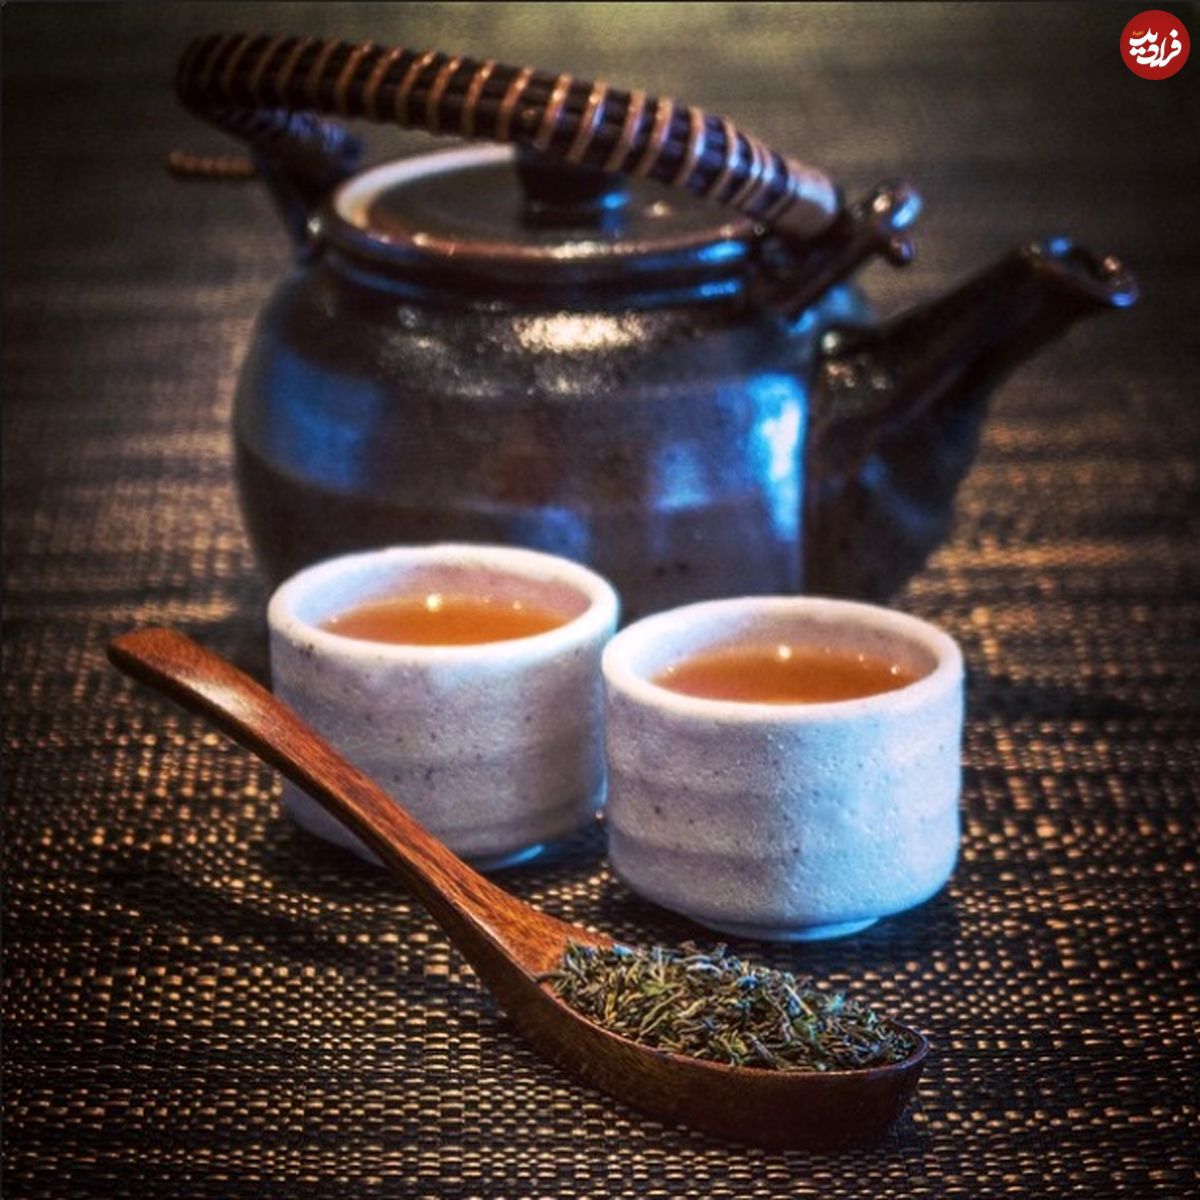 روش سرو چای در کشورهای جهان را ببینید